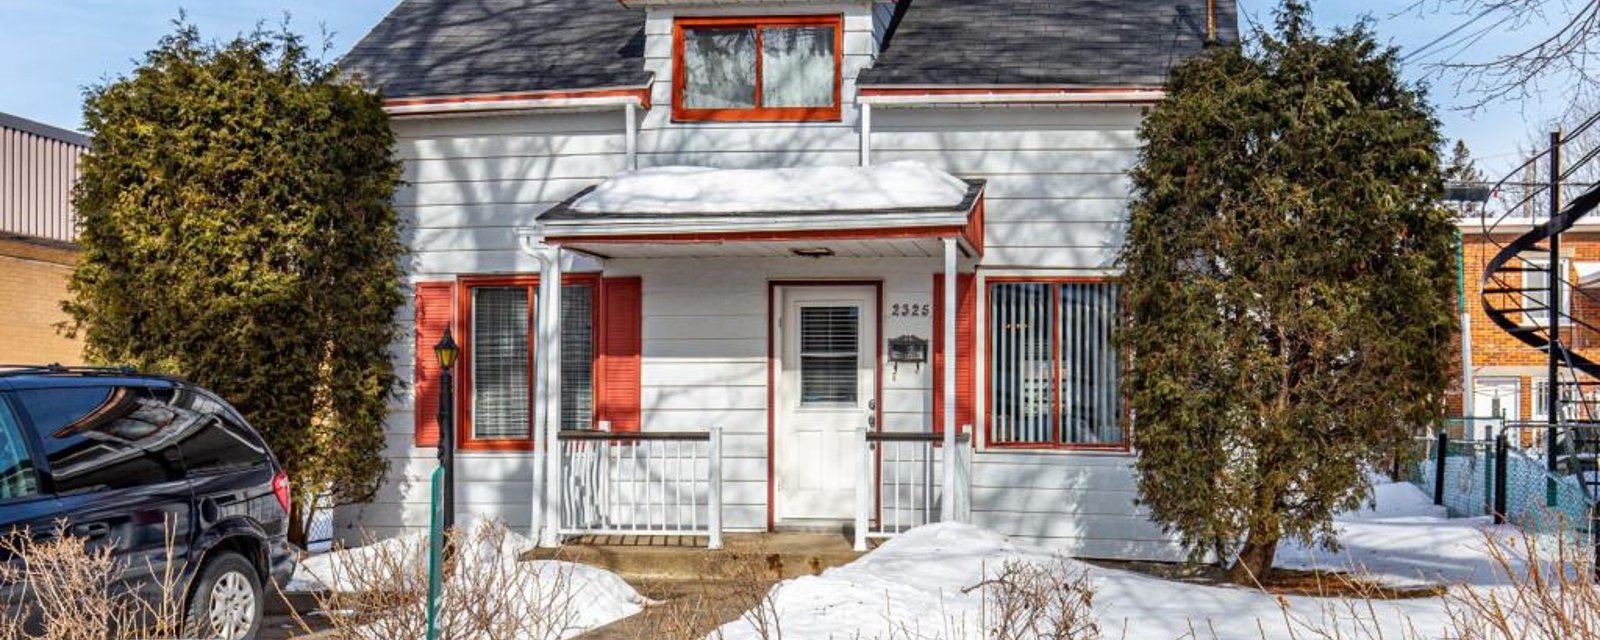 Coquet cottage bien situé à vendre pour 275 000$: un chez-soi à Montréal à prix alléchant